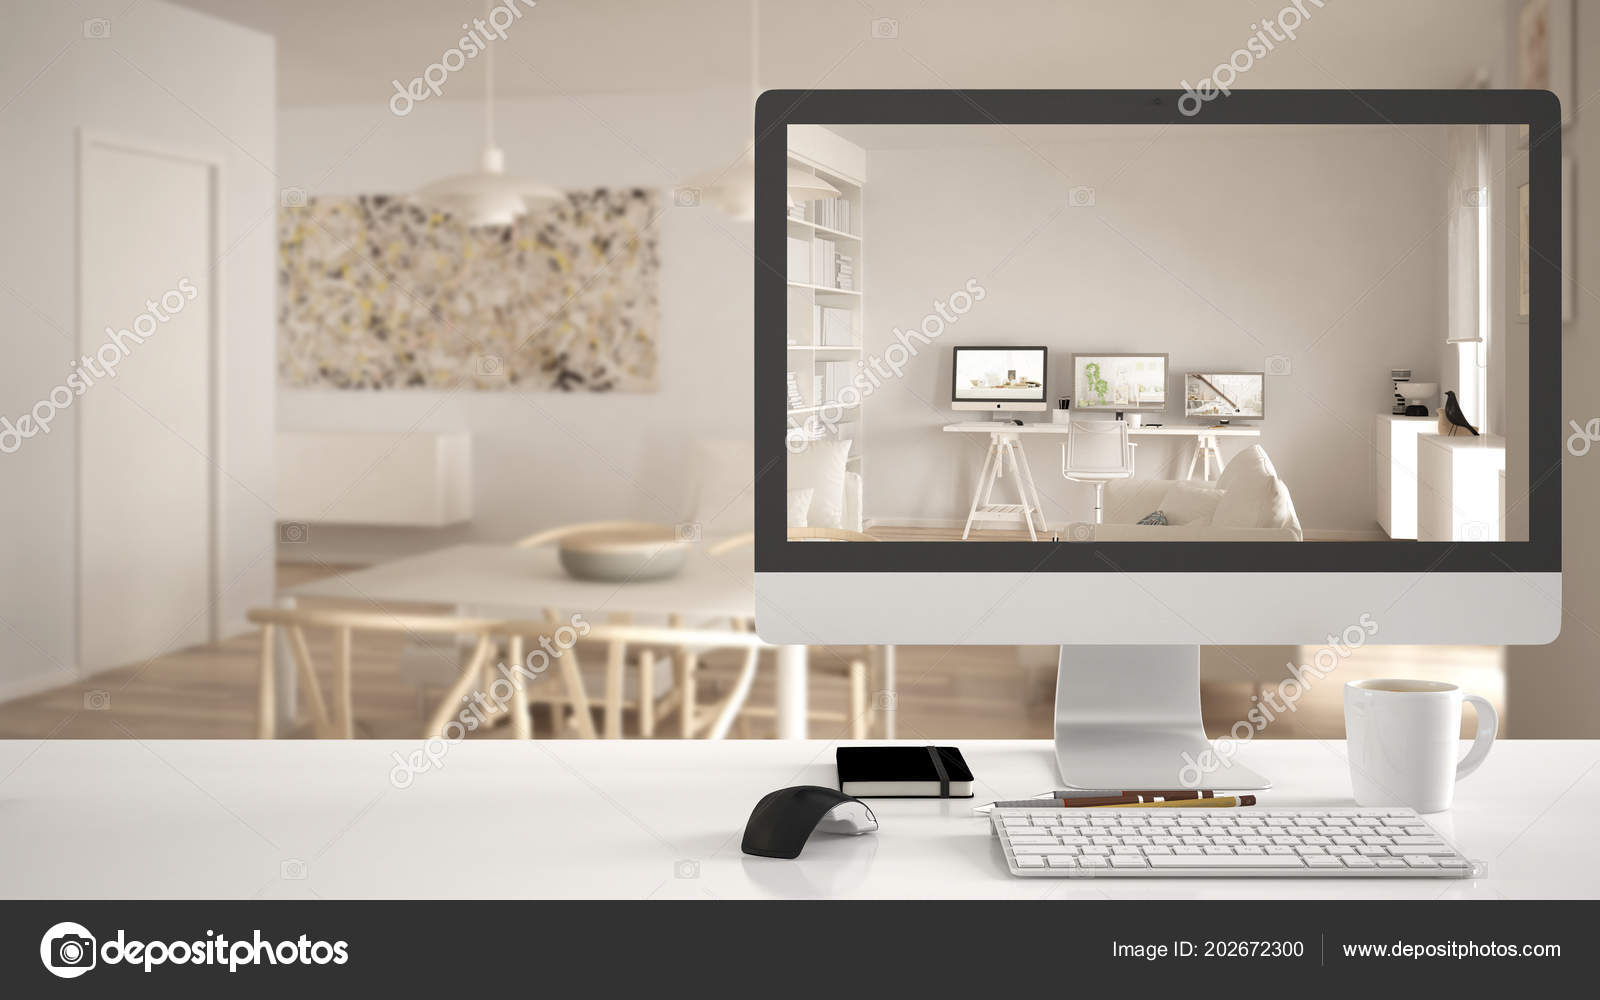 Architect House Project Concept Desktop Computer White Work Desk